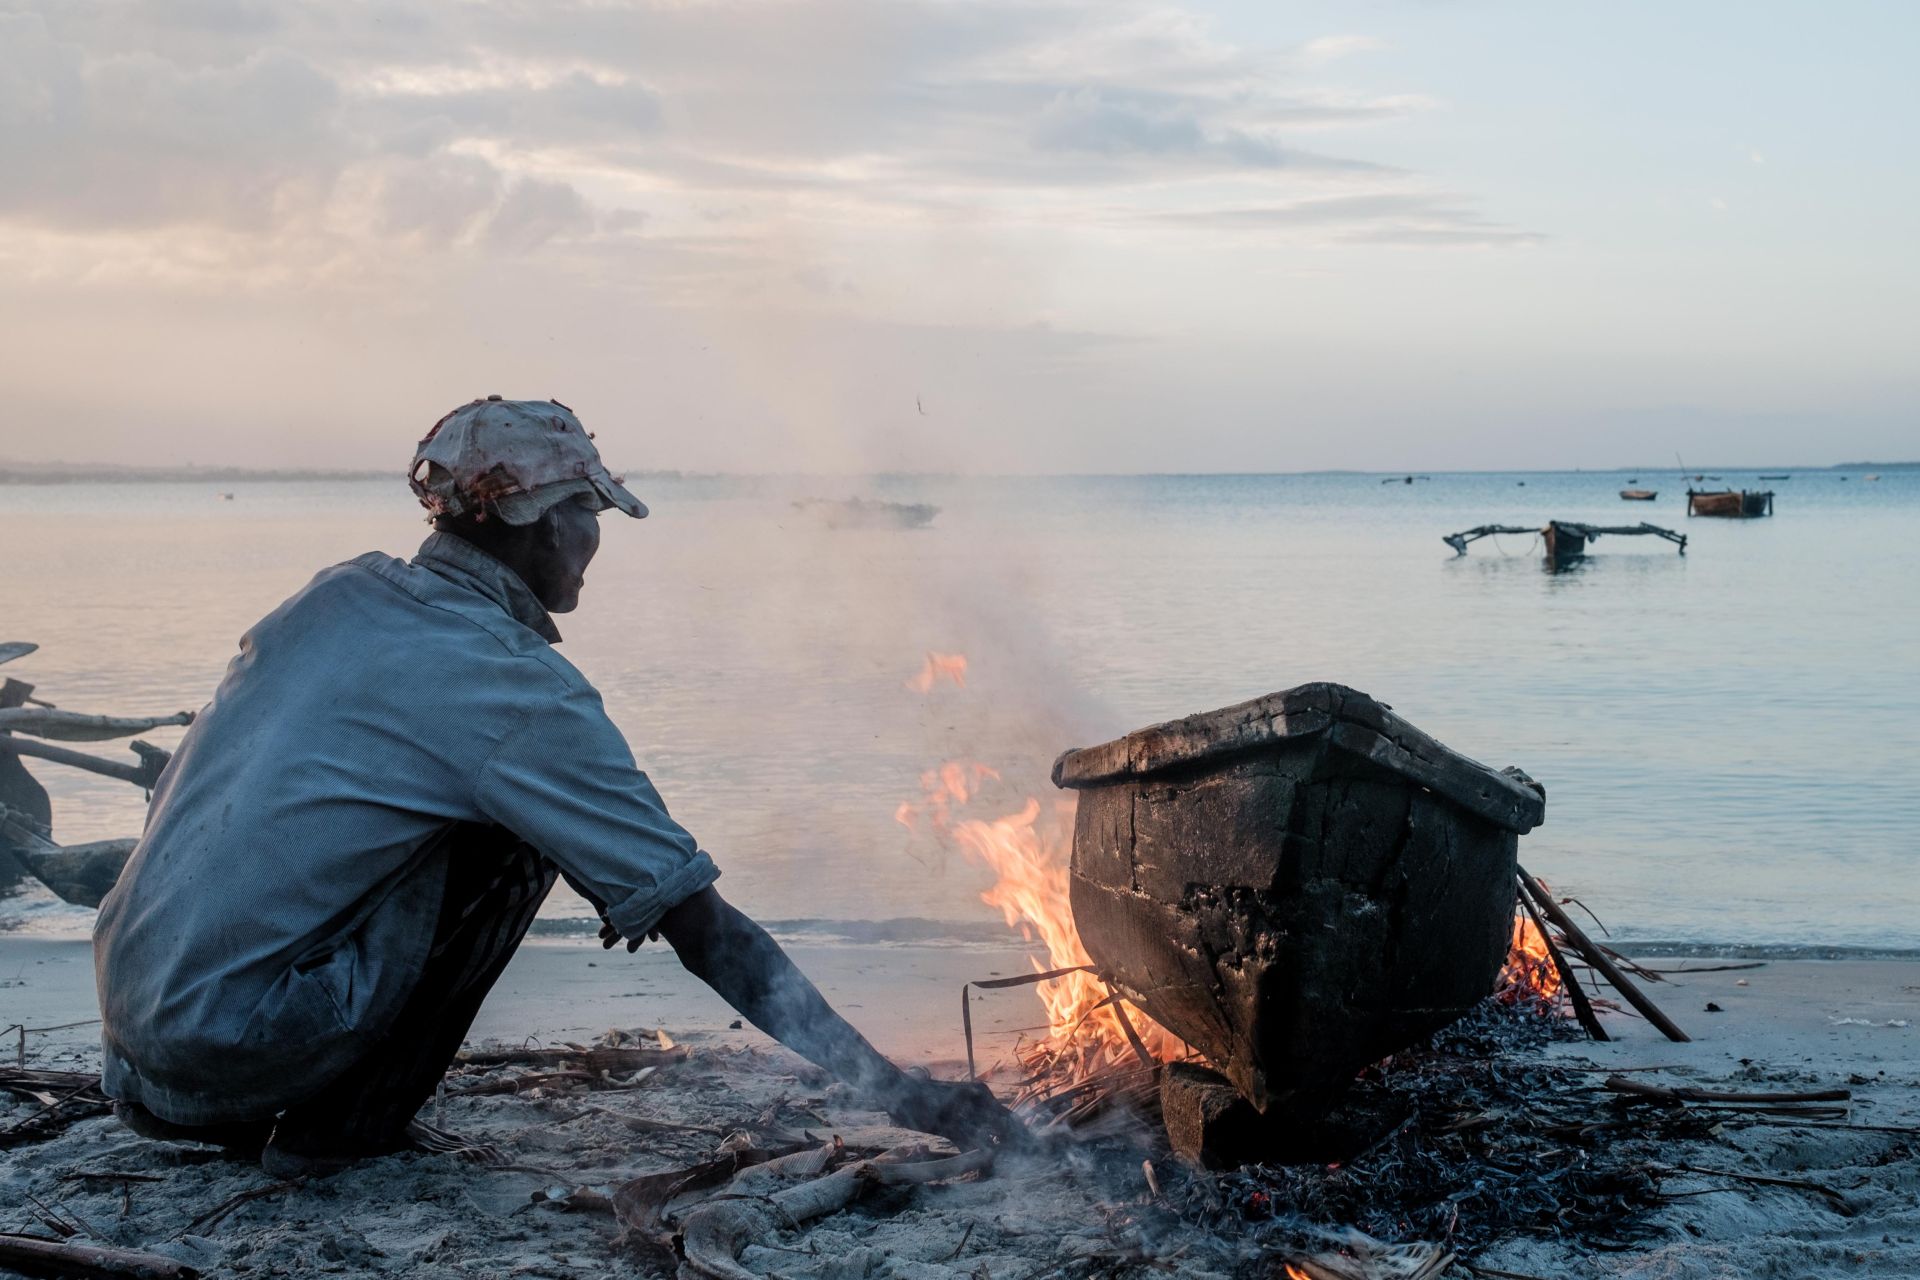 Tanzania Faces an Encroaching Coastal Crisis